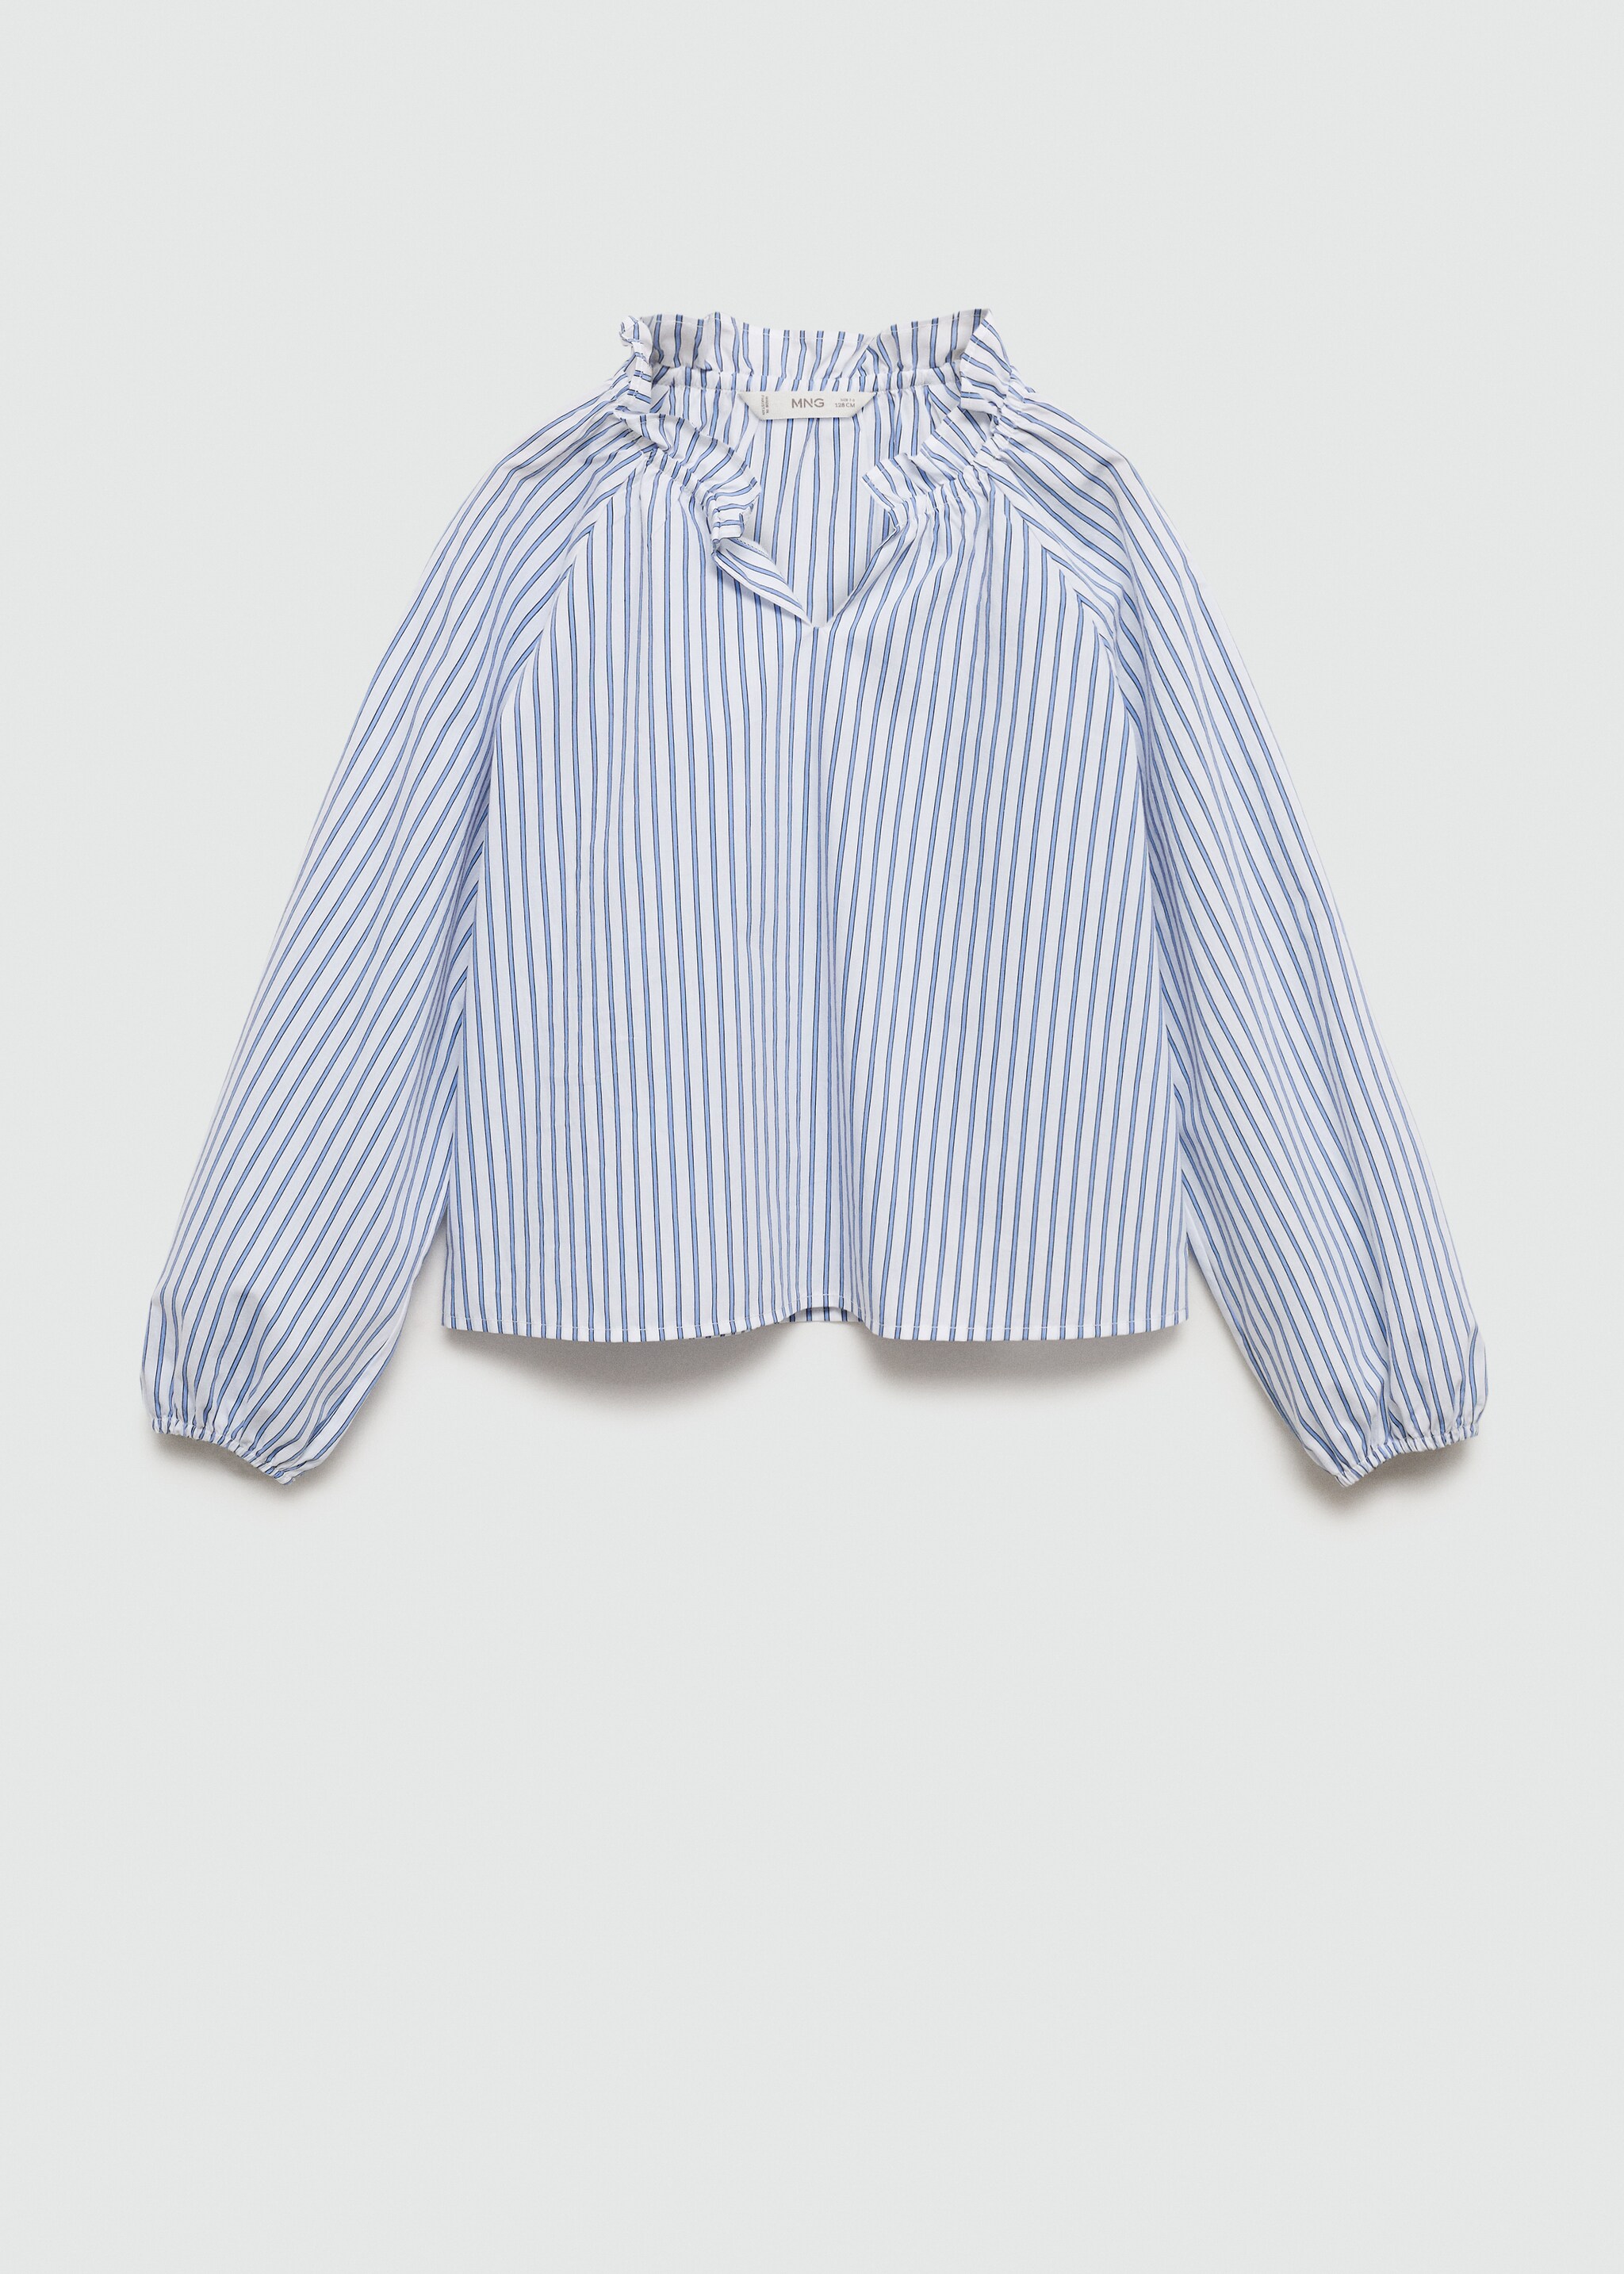 Блузка в полоску с присборенной деталью - Изделие без модели